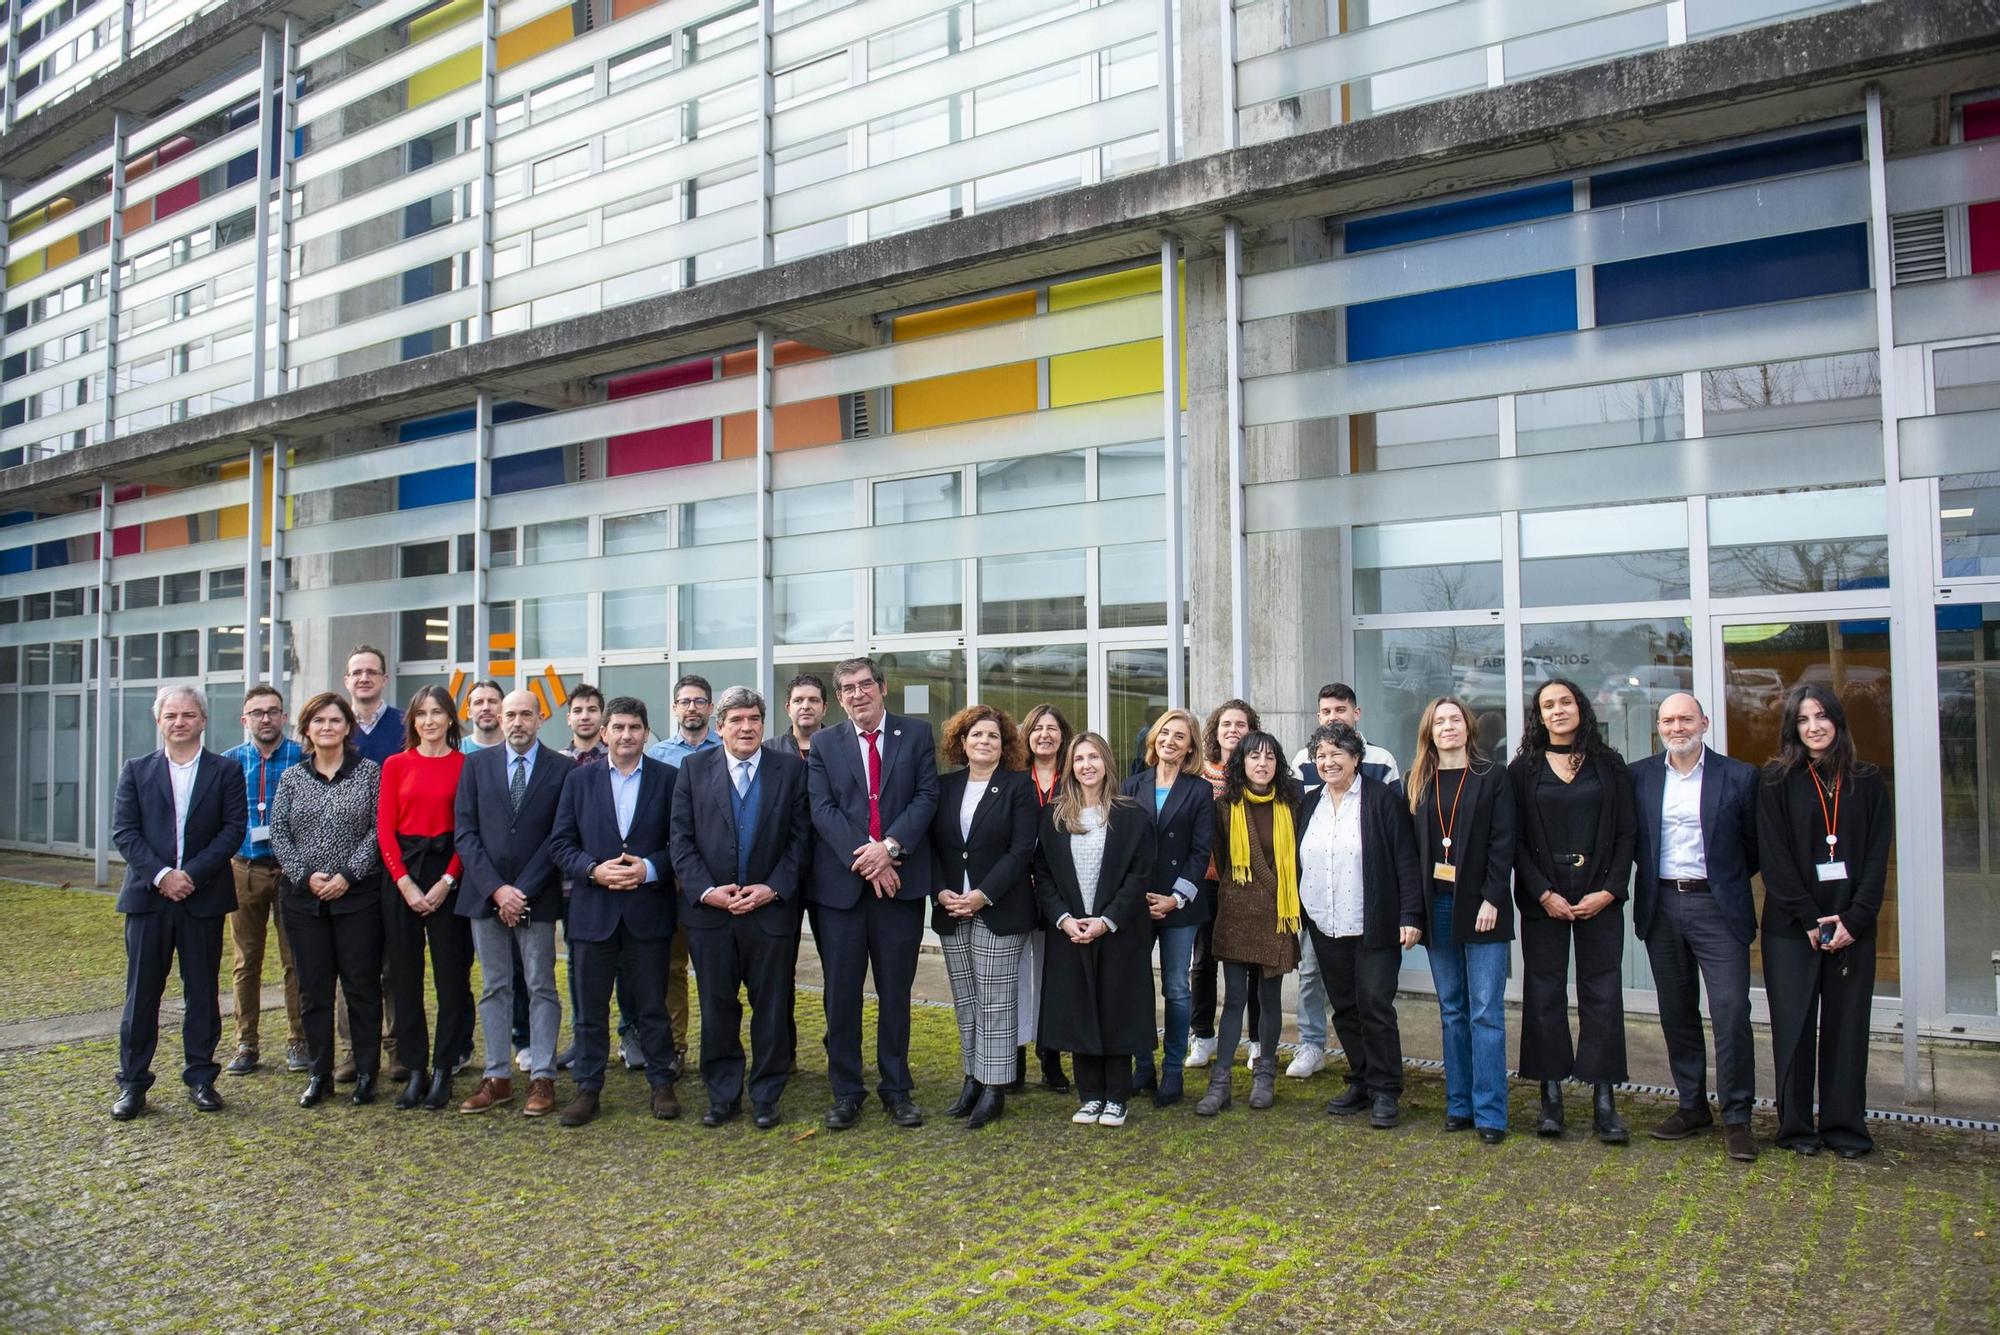 El ministro Escrivá visita instalaciones de la Universidade da Coruña